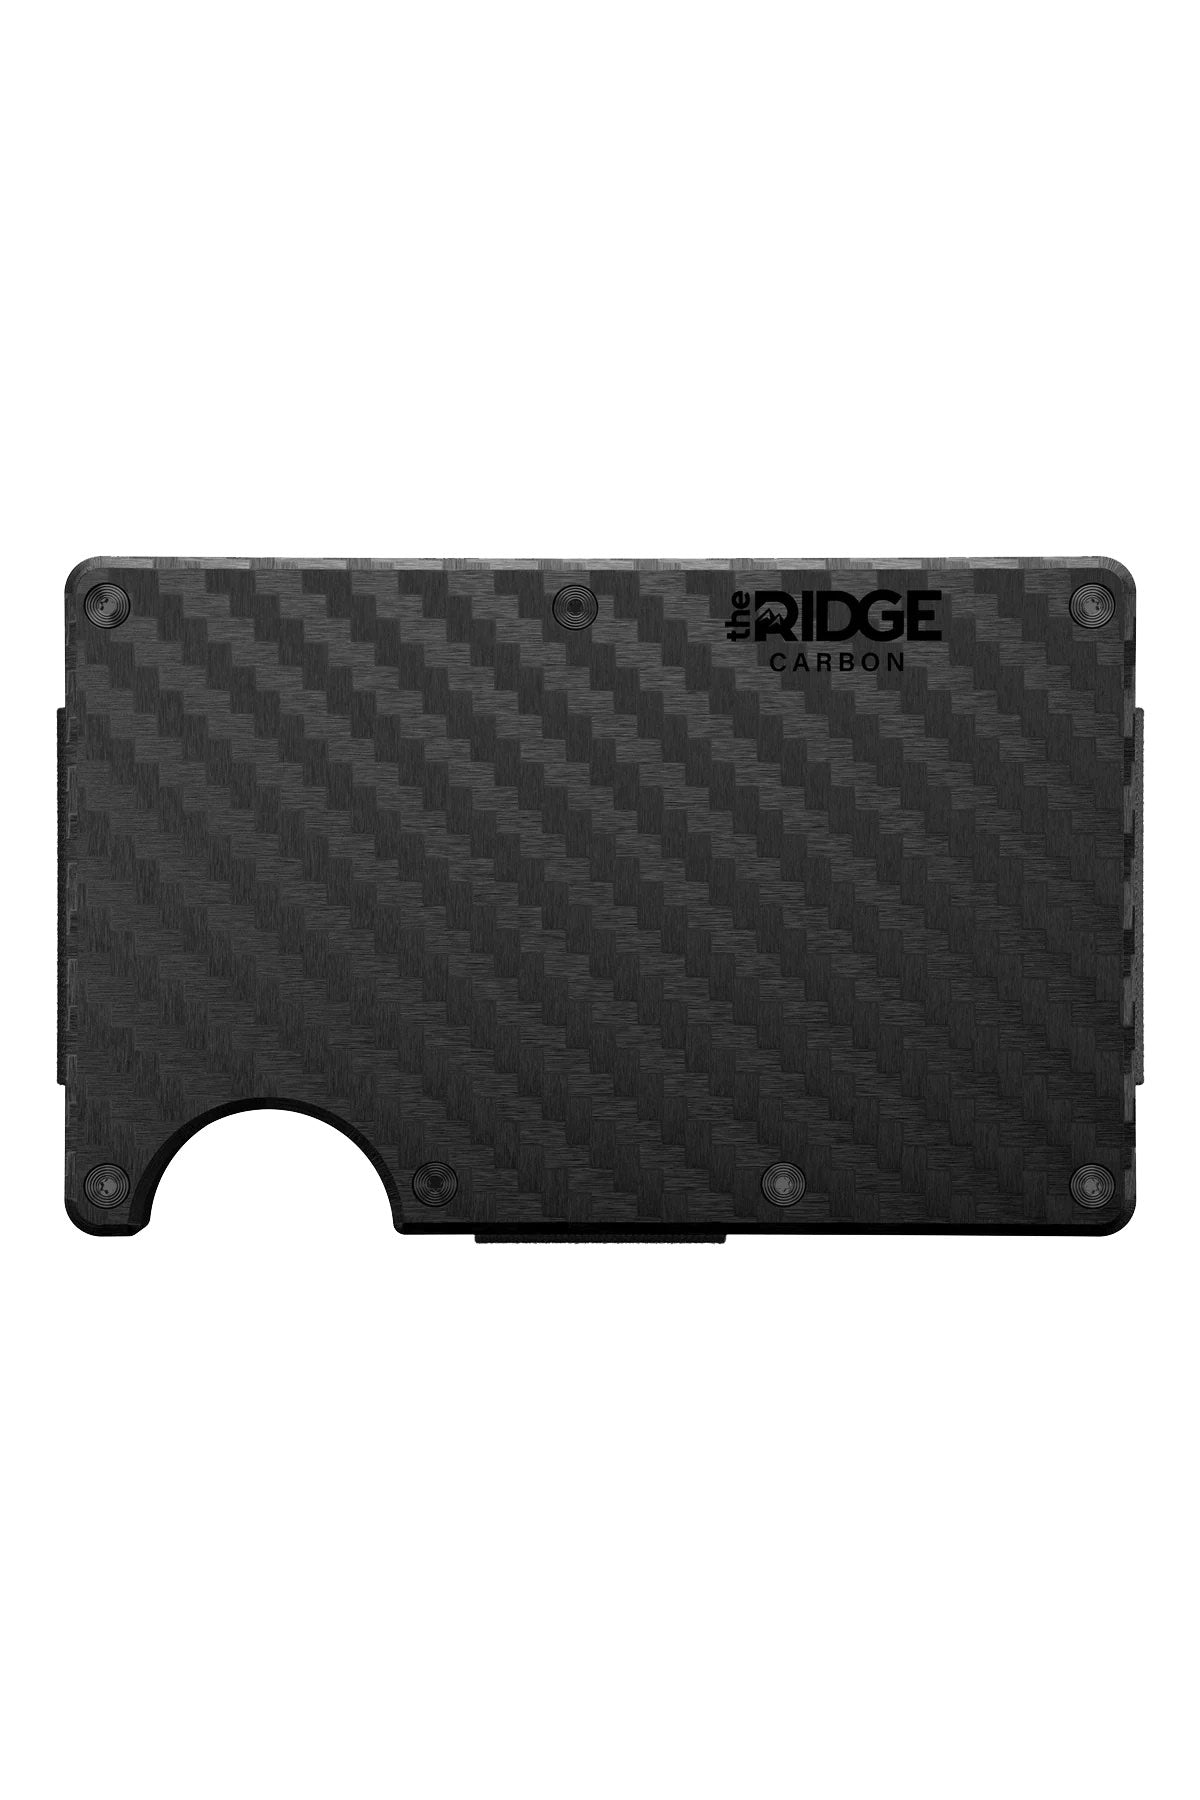 Ridge - Wallet - Carbon Fiber - Cash Strap - 3k Weave